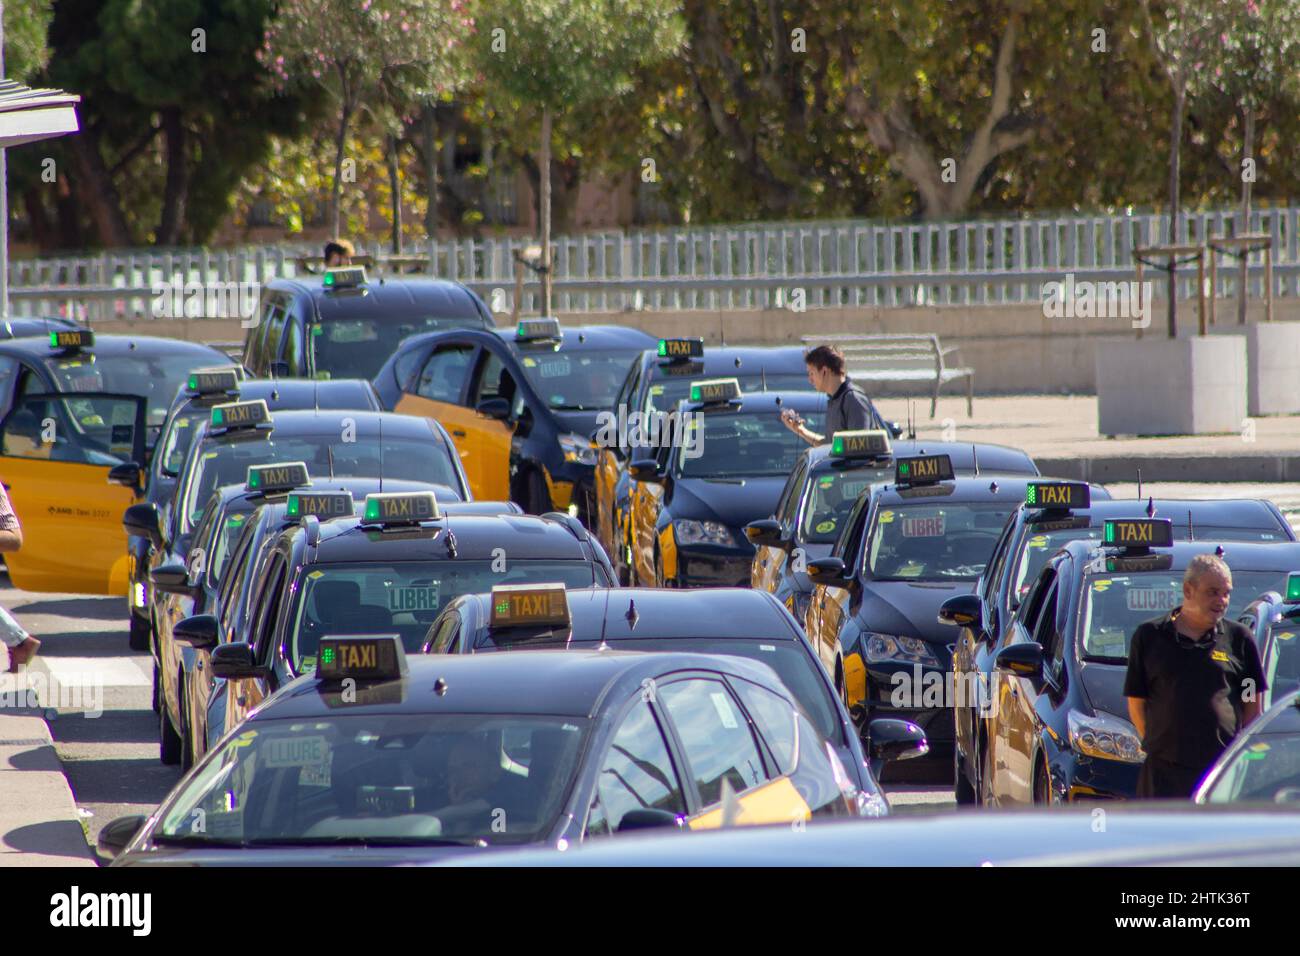 BARCELLONA, SPAGNA - 4 OTTOBRE 2019 molti taxi in nero e giallo in attesa di tariffe Foto Stock